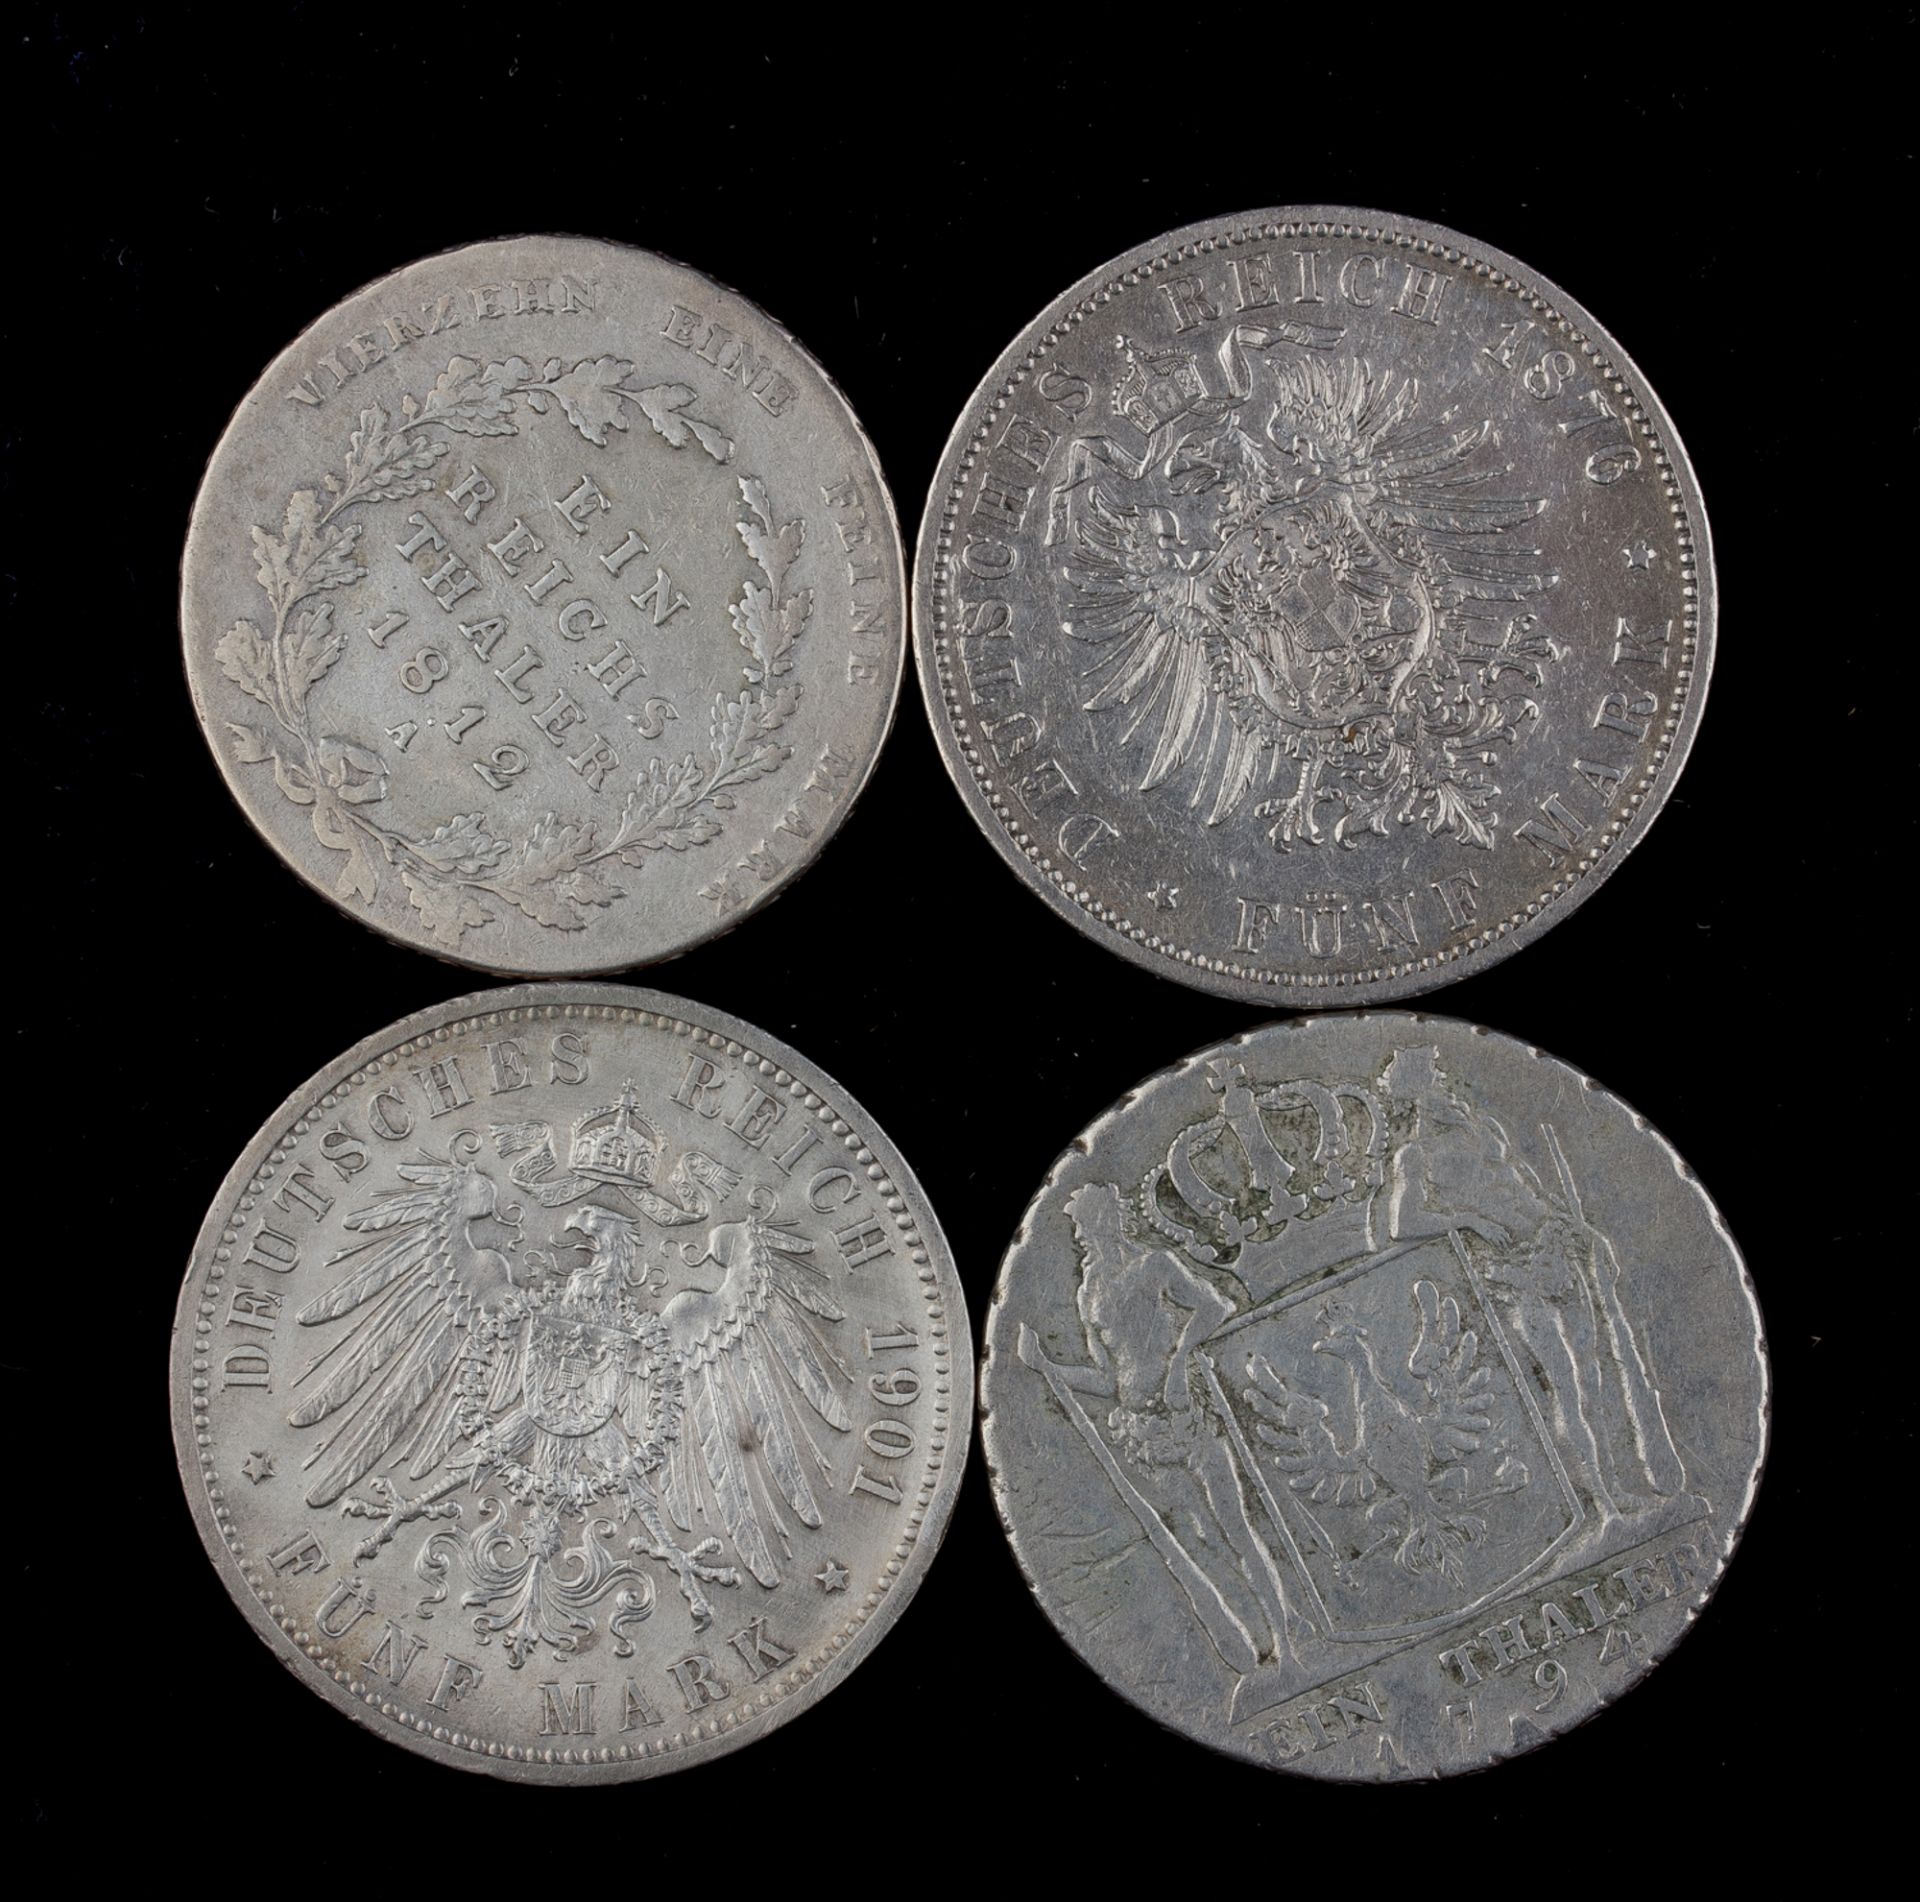 Zwei preußische Taler und zwei 5-Mark-Silbermünzen - Image 2 of 2